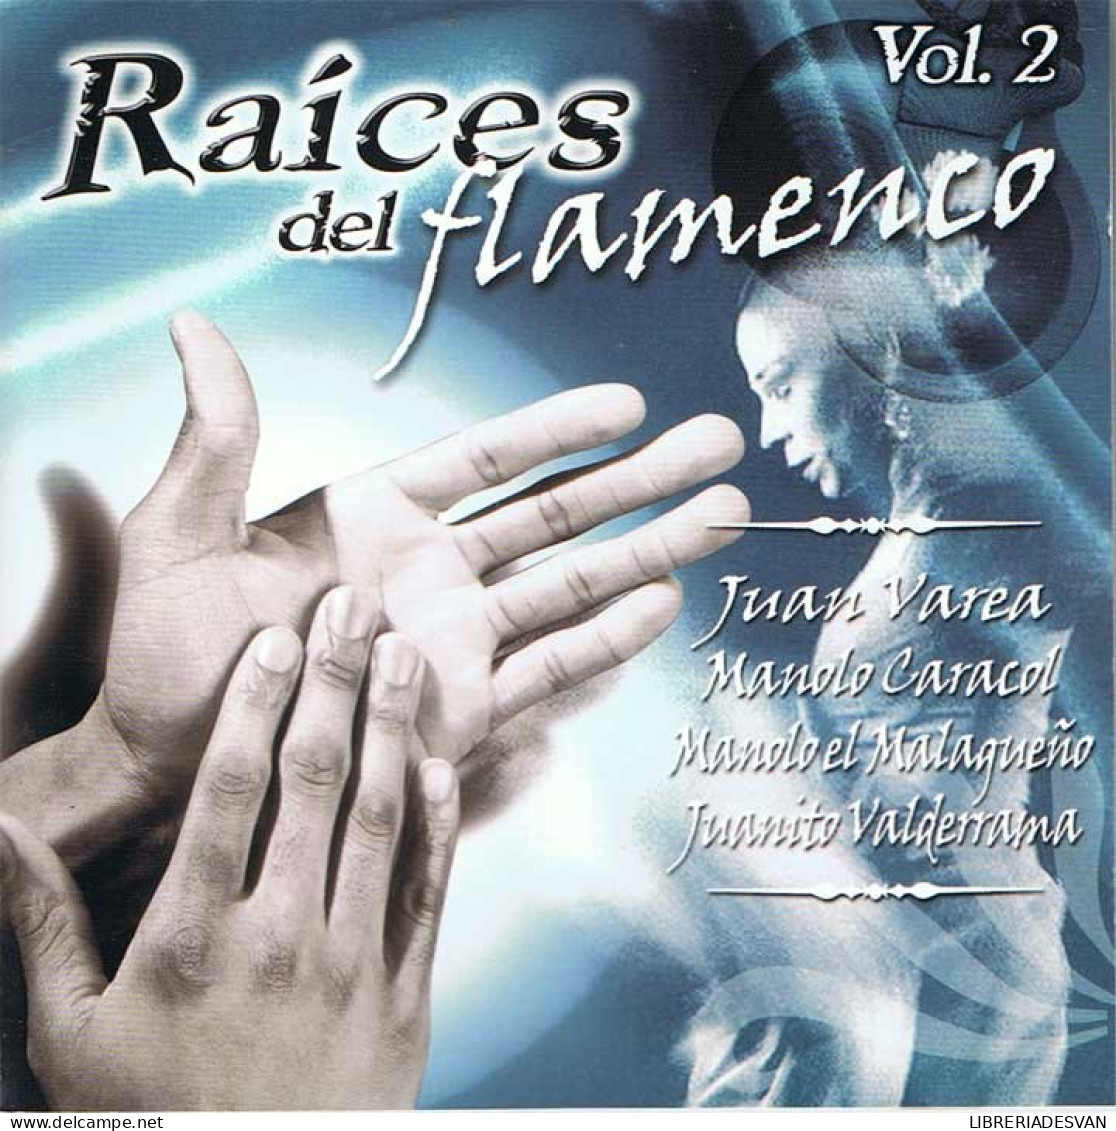 Raíces Del Flamenco Vol. 2 - Juan Varea, Manolo Caracol, Manolo El Malagueño, Juanito Valderrama - OK 2004 - Andere - Spaans